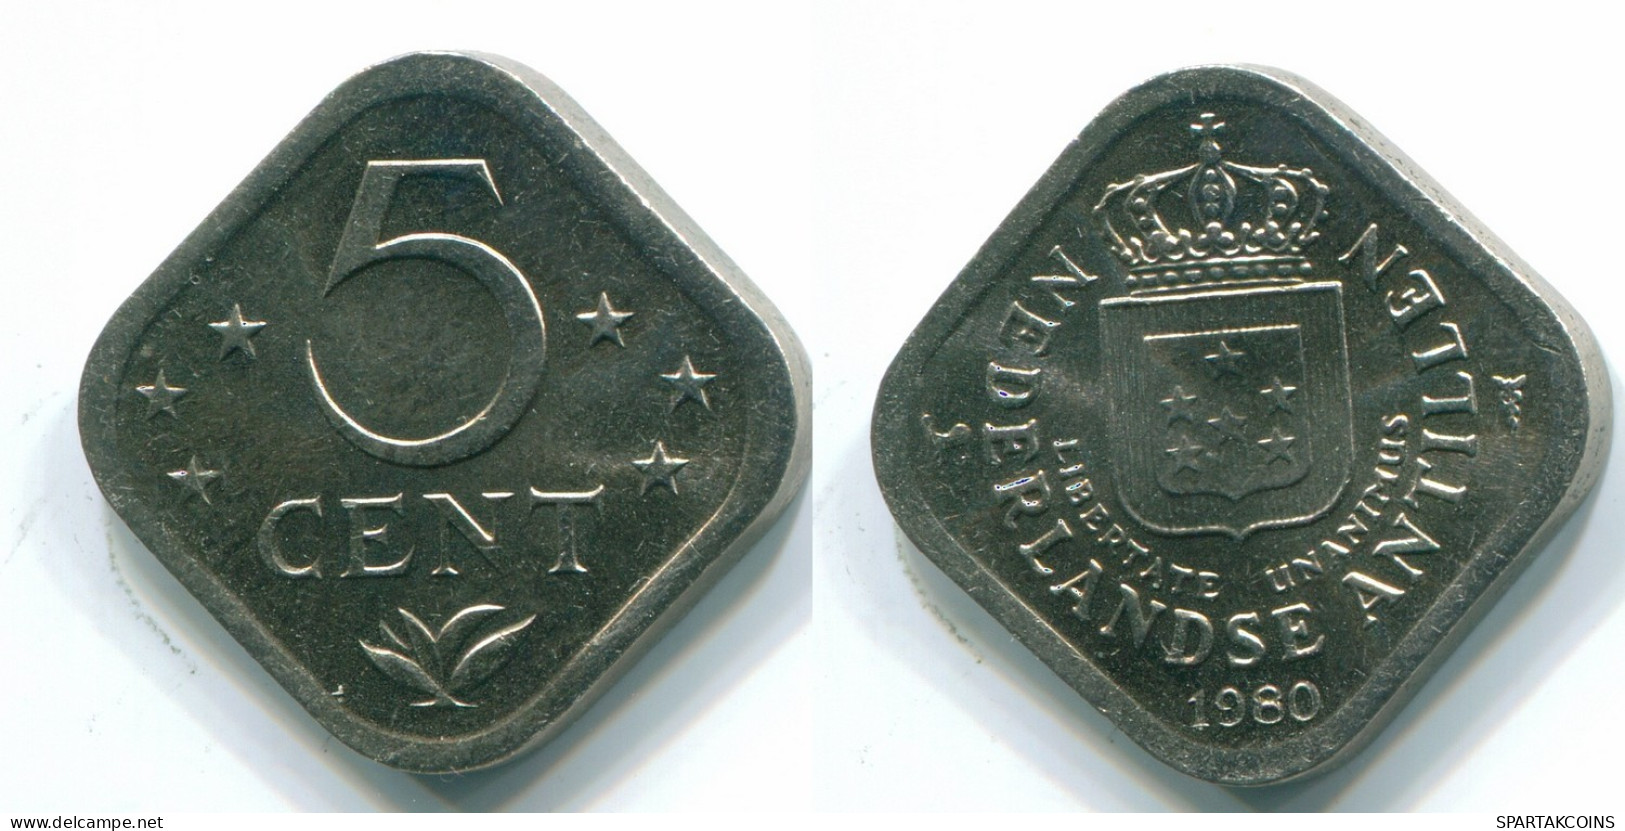 5 CENTS 1980 NIEDERLÄNDISCHE ANTILLEN Nickel Koloniale Münze #S12329.D.A - Niederländische Antillen